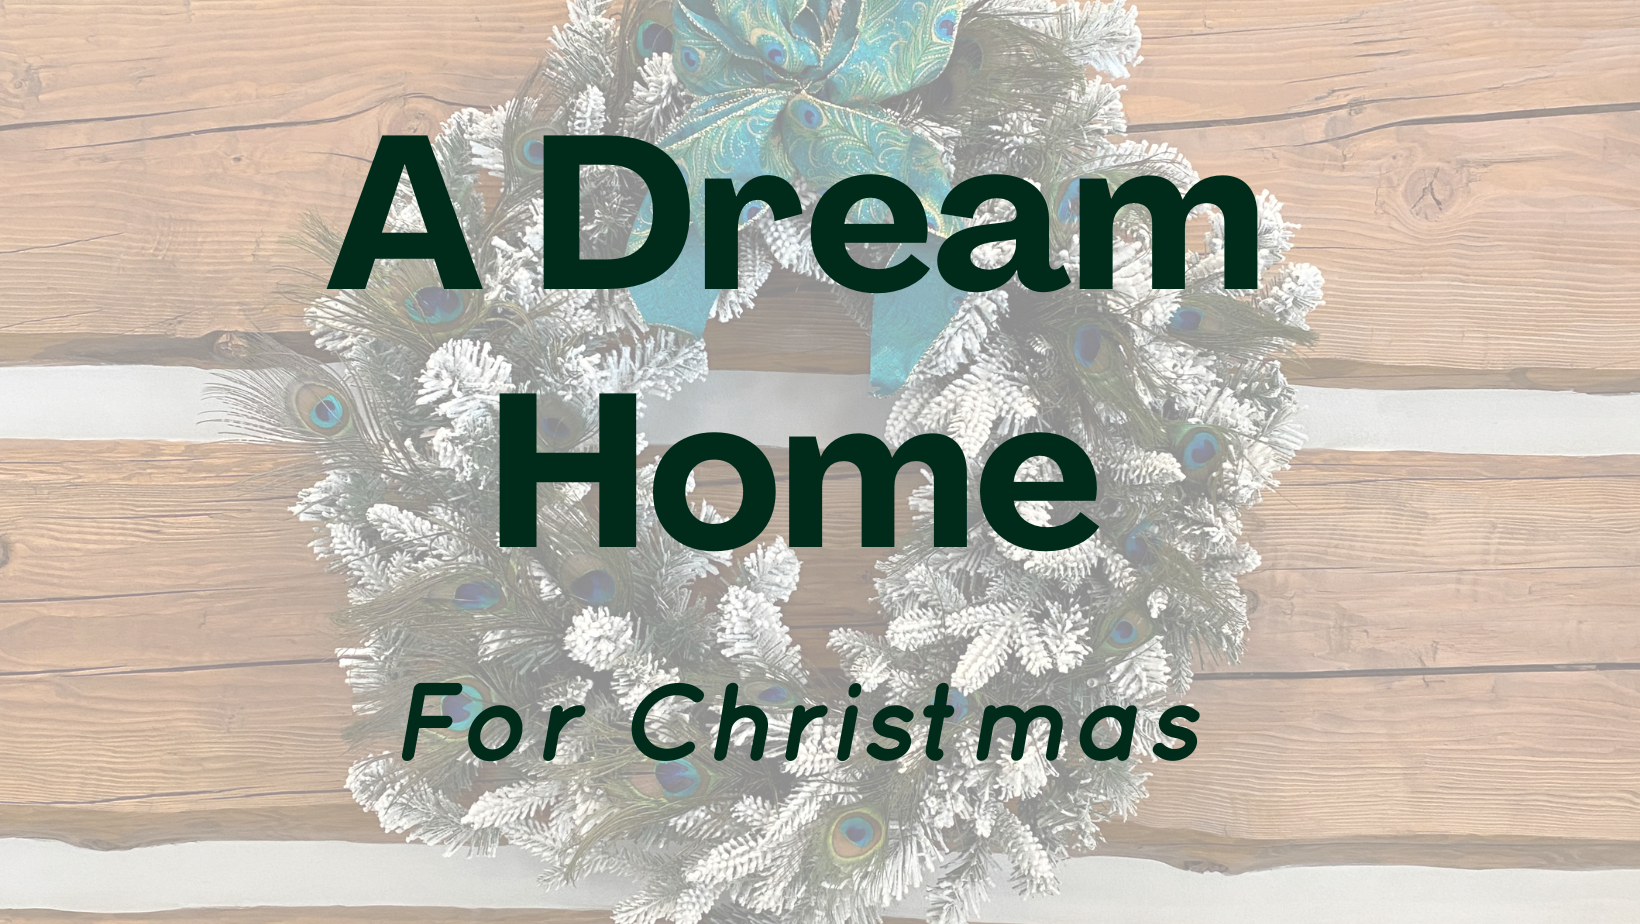 A dream log home for Christmas